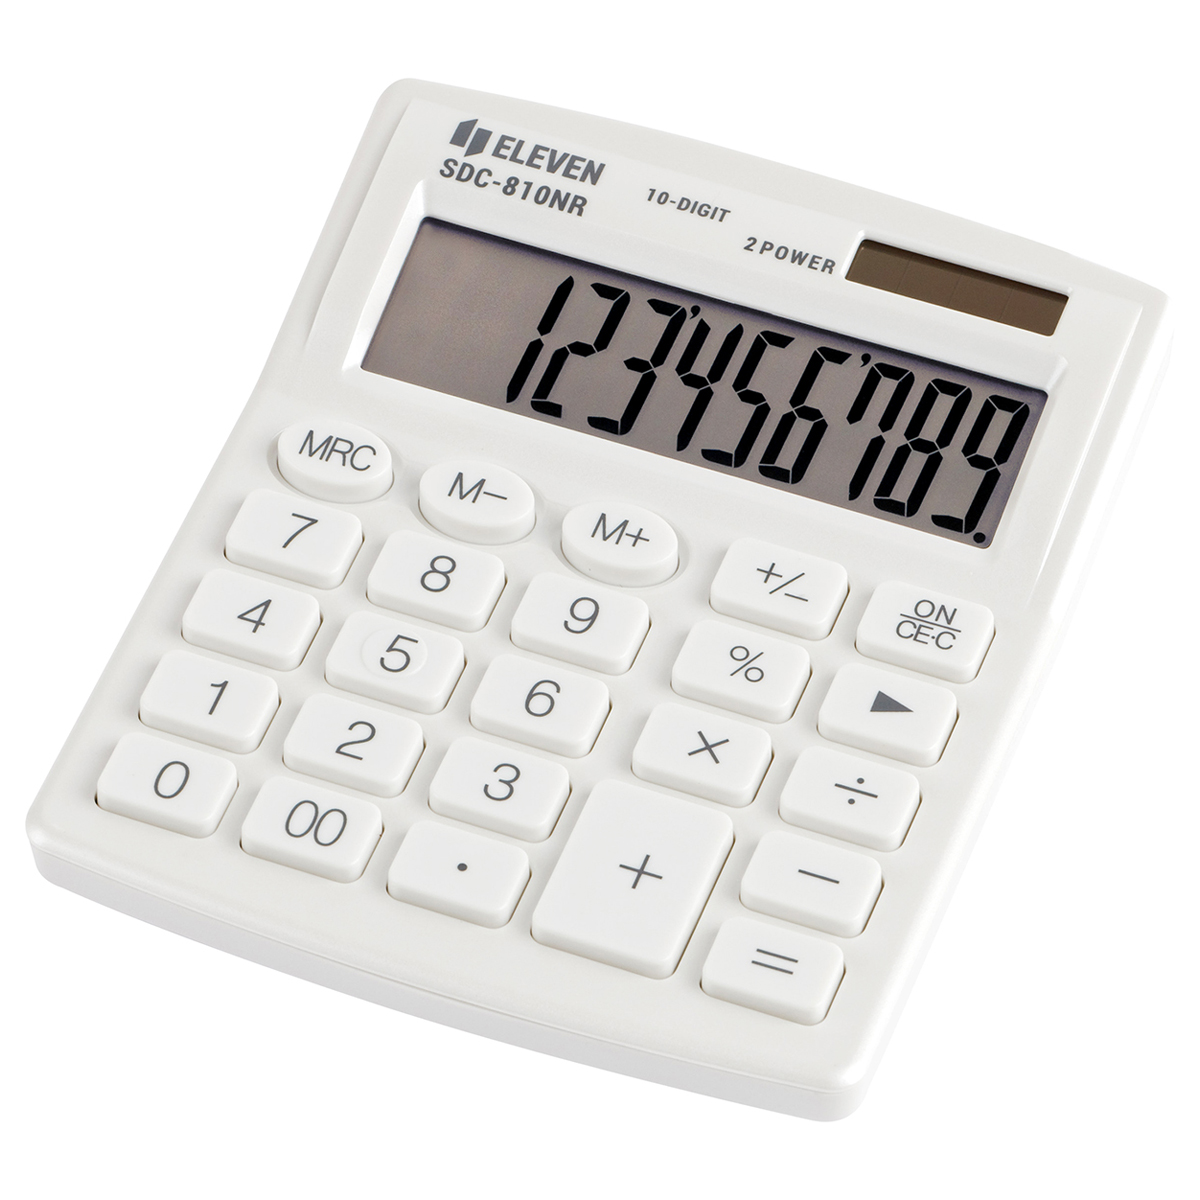 Калькулятор настольный Eleven SDC-810NR-WH, 10 разрядов, двойное питание, 102*124*25мм, белый